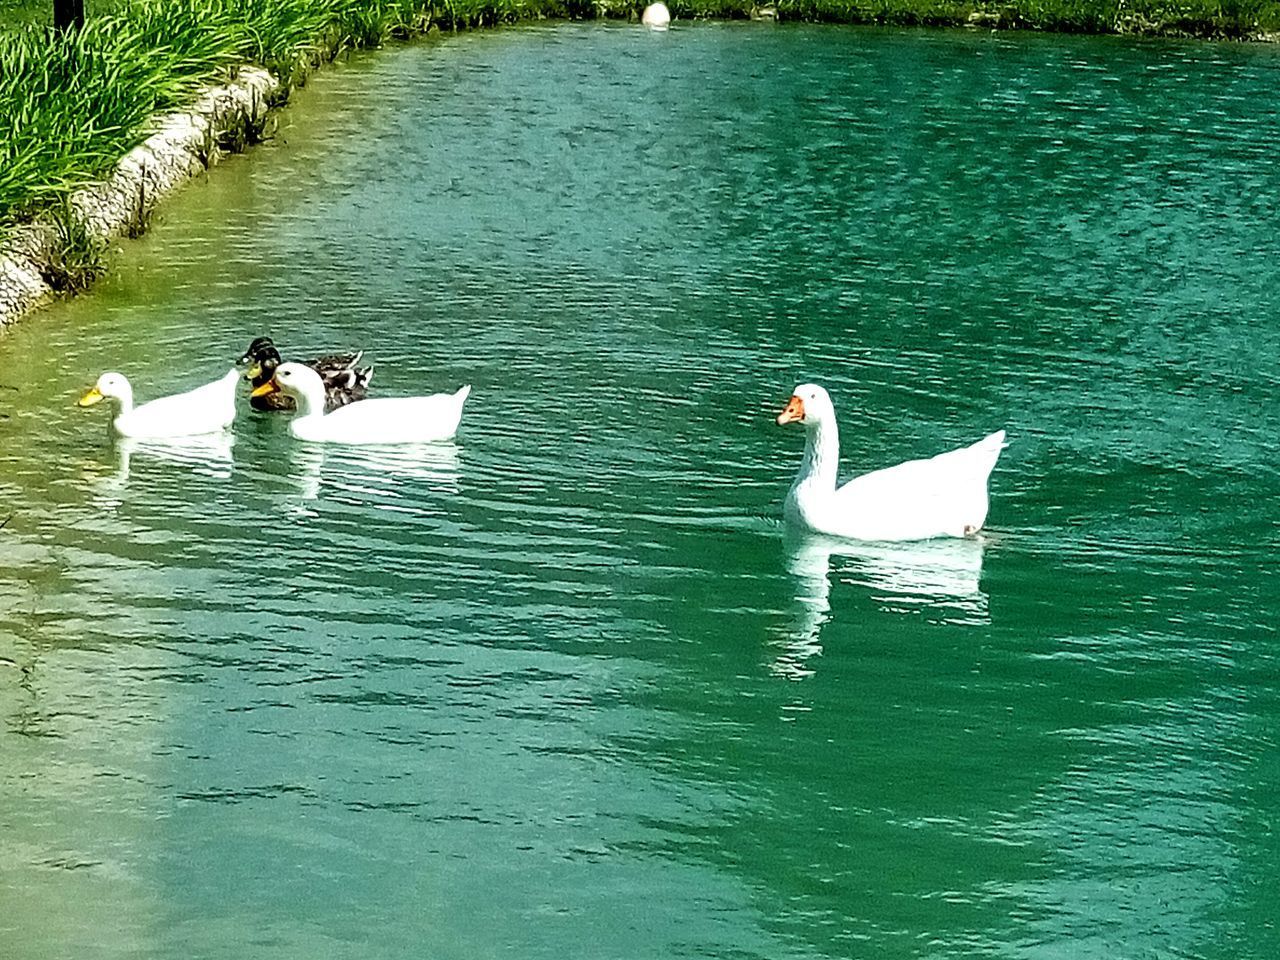 SWANS SWIMMING ON LAKE